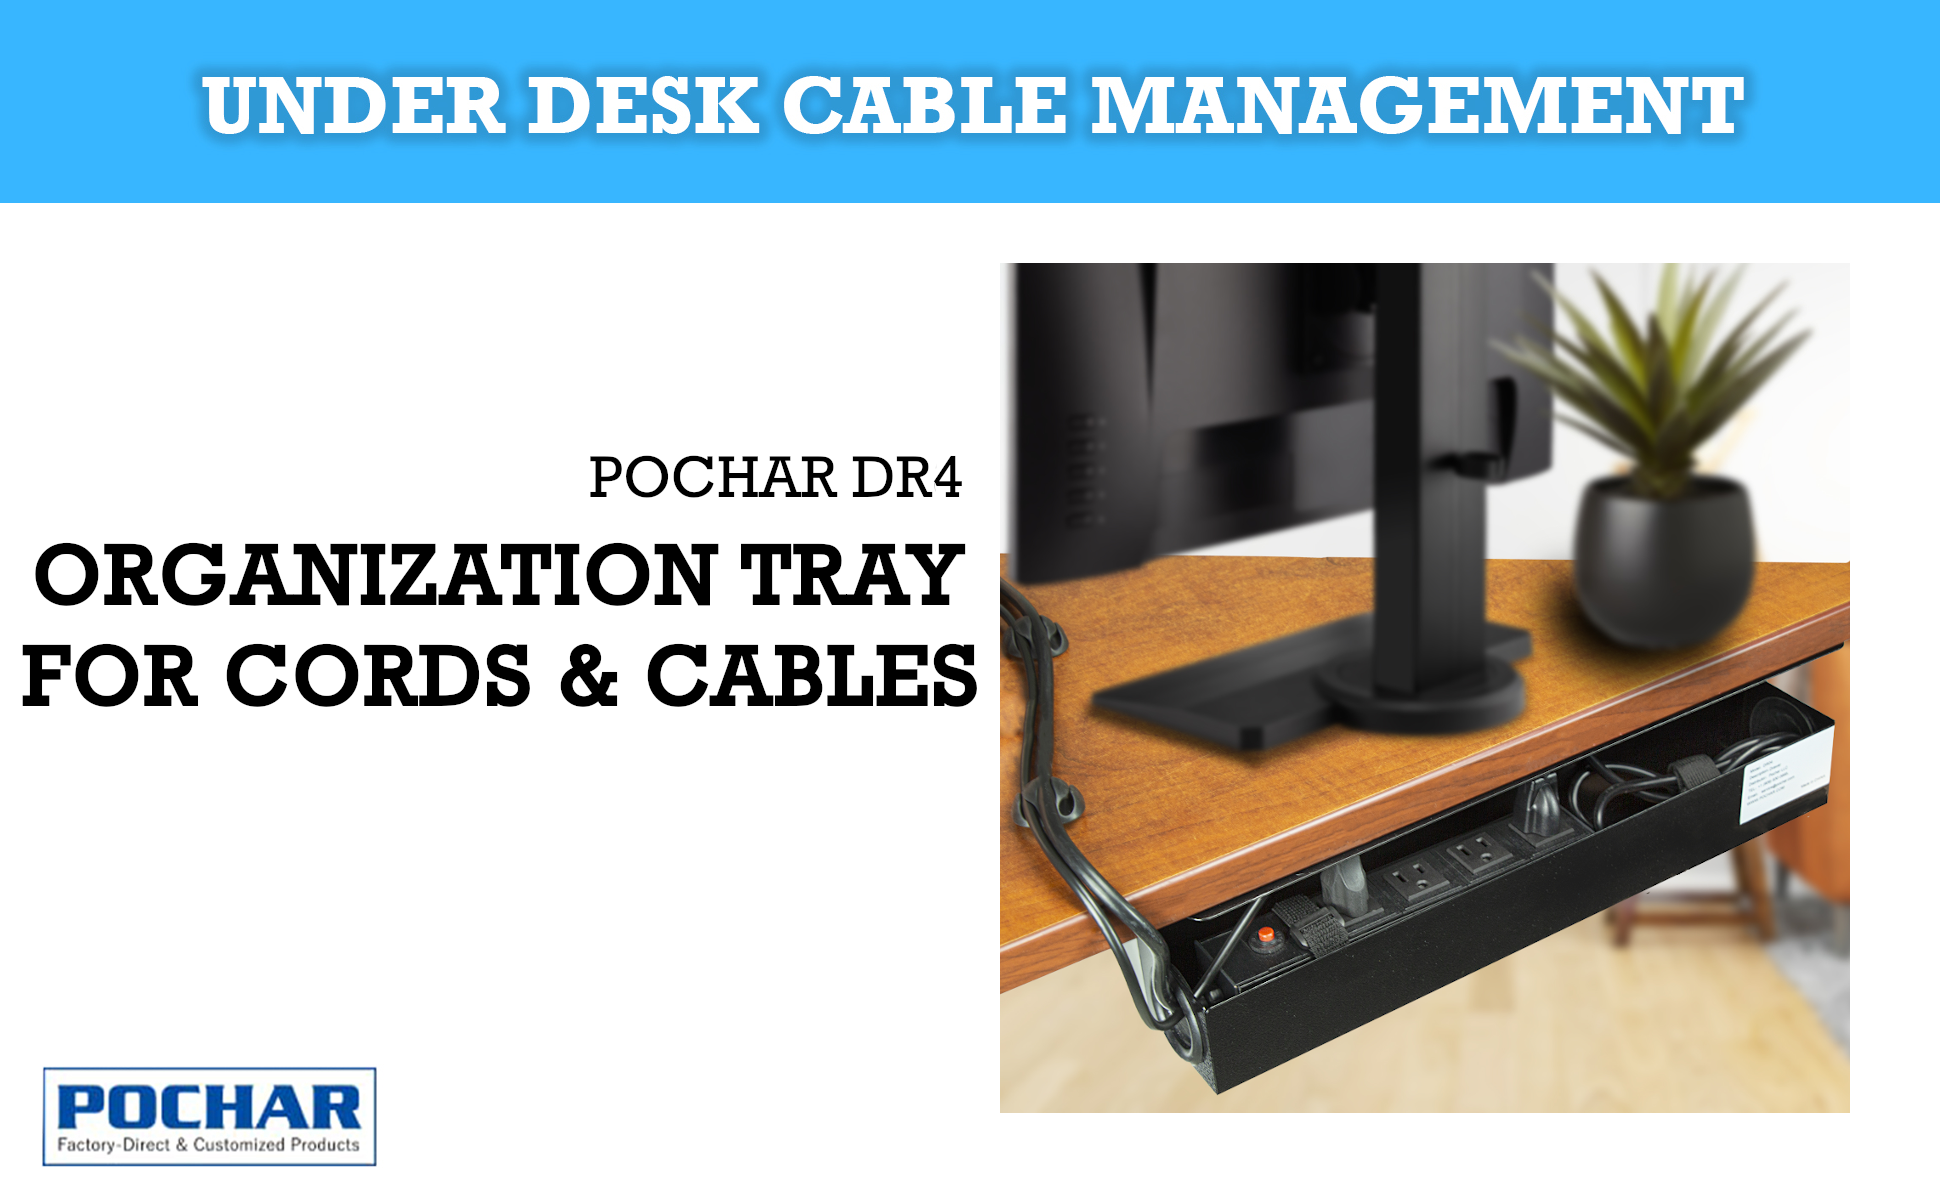 POCHAR-DR4-16-inch-Under-Desk-Cable-Management-Tray